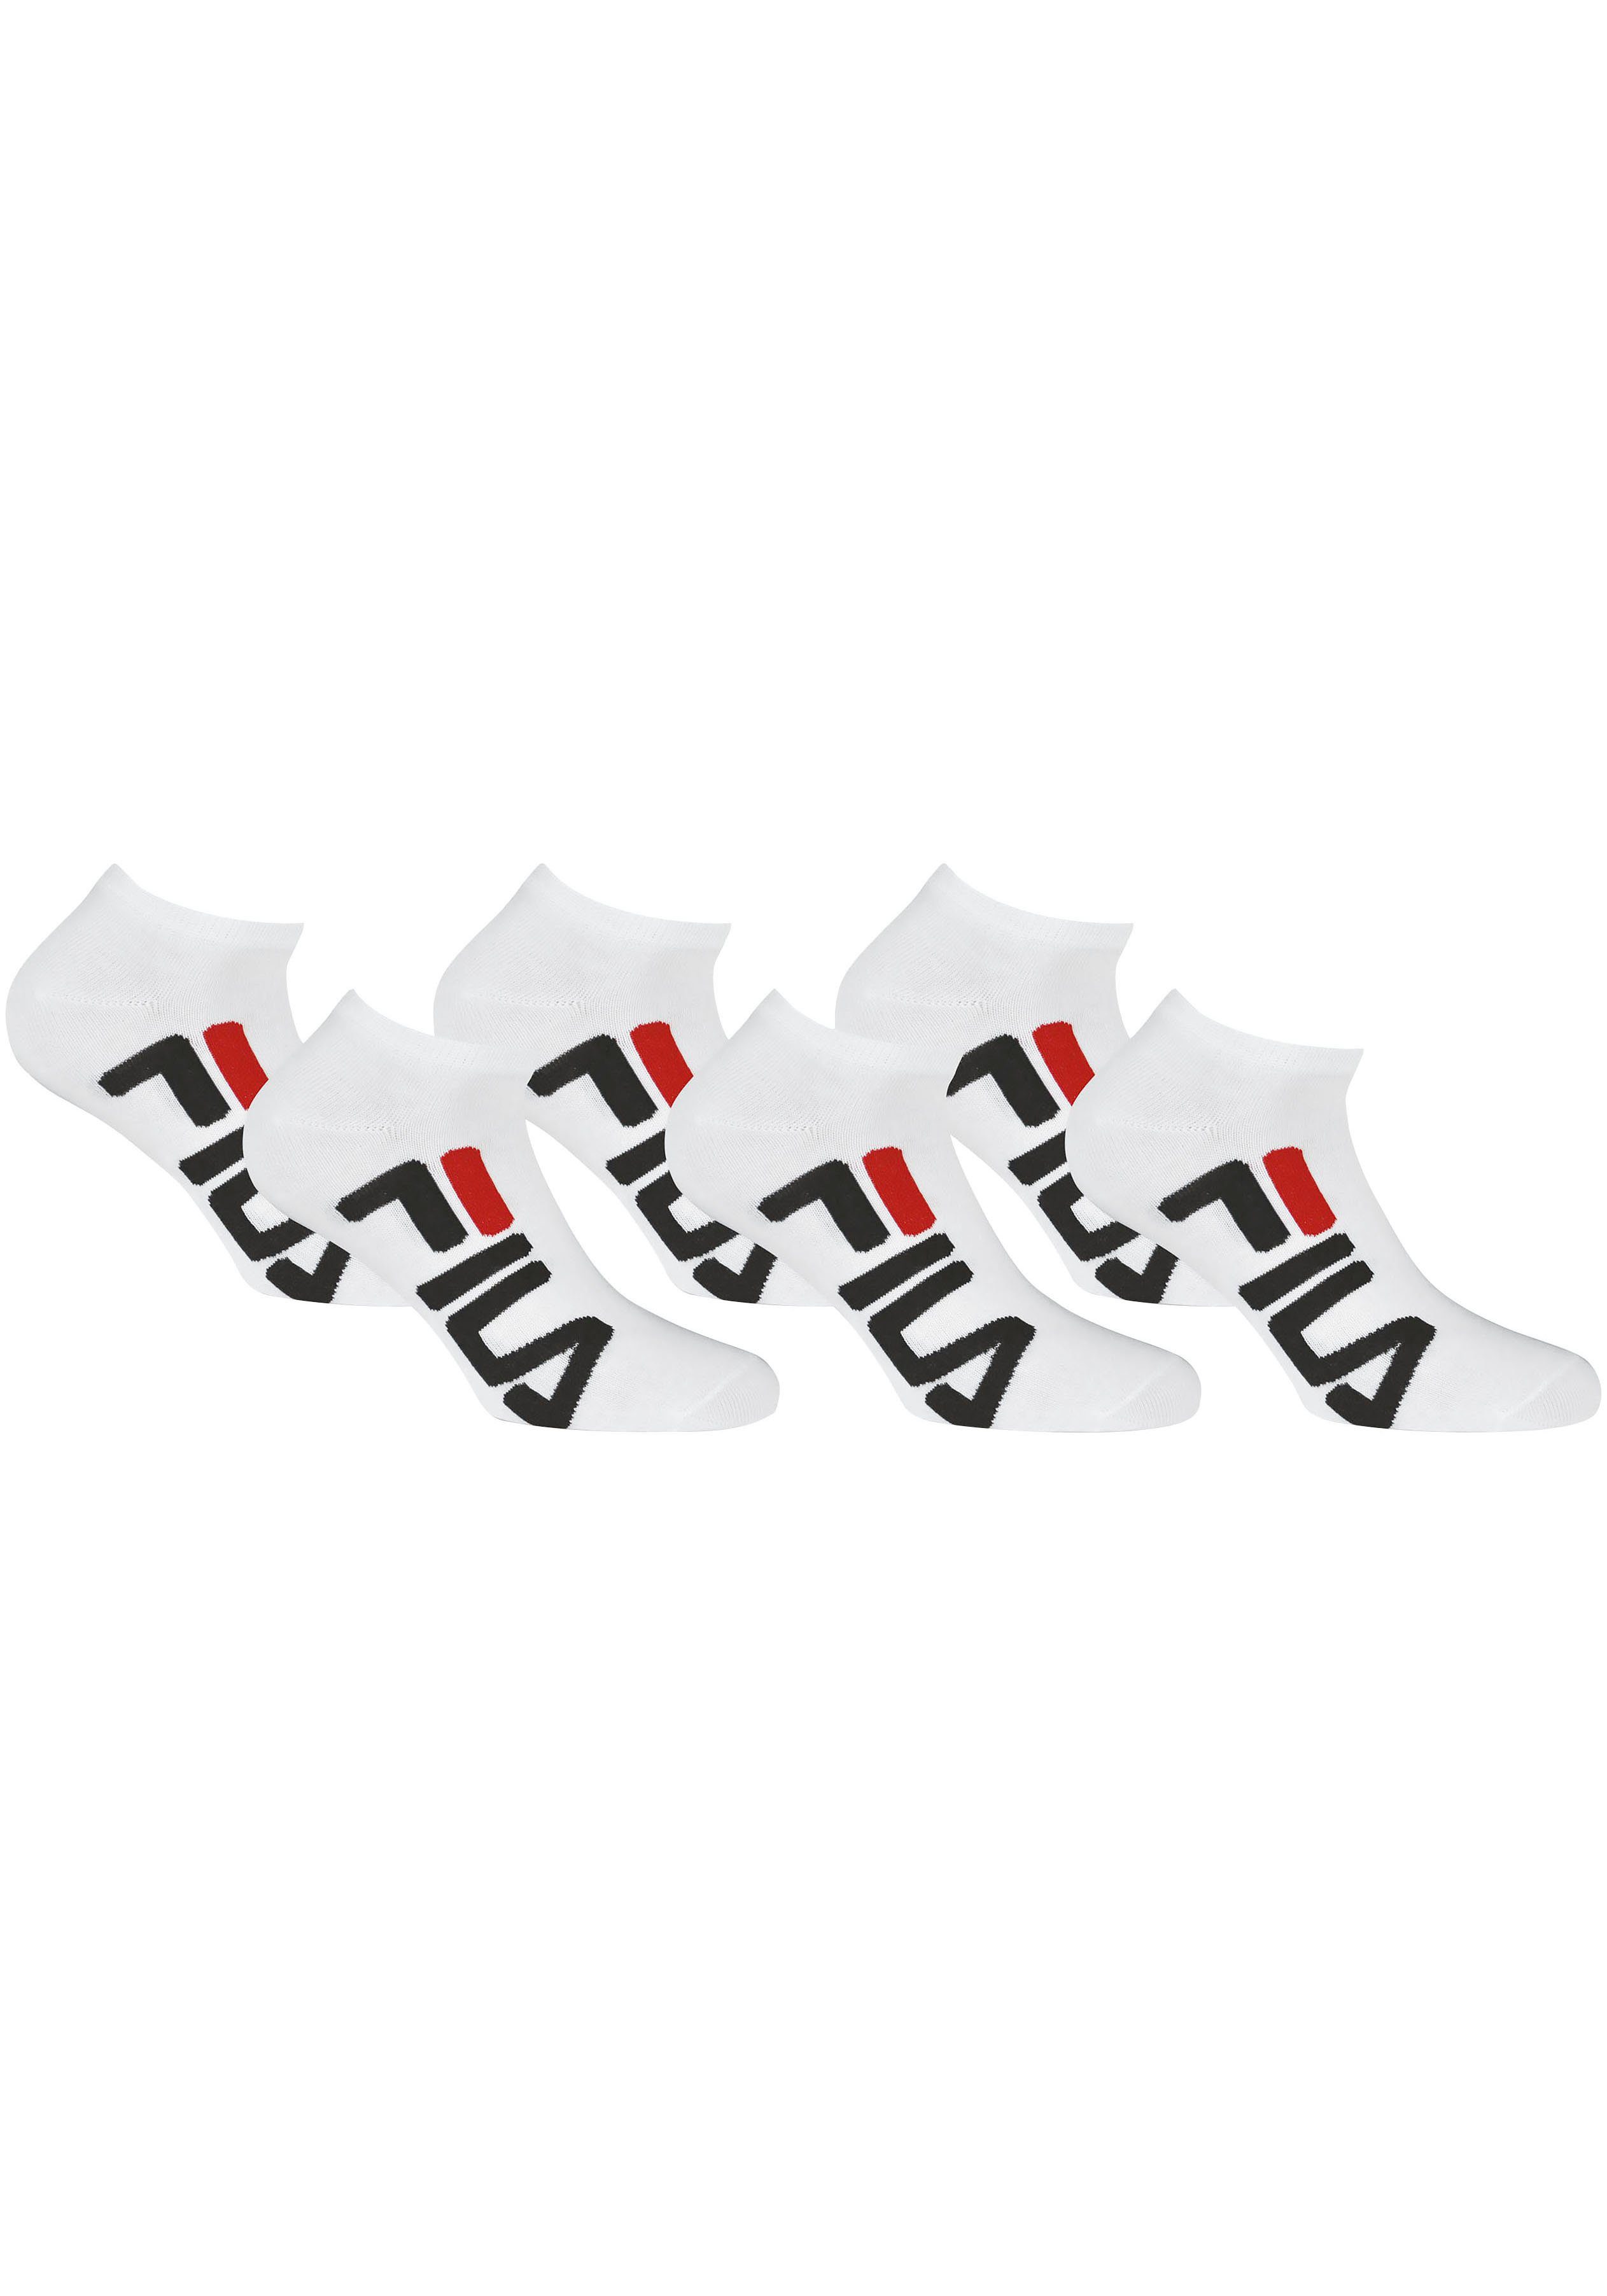 Neue japanische Produkte zu Schnäppchenpreisen Fila Sneakersocken 6-Paar) Markenschriftzug (Packung, seitlich white Großer